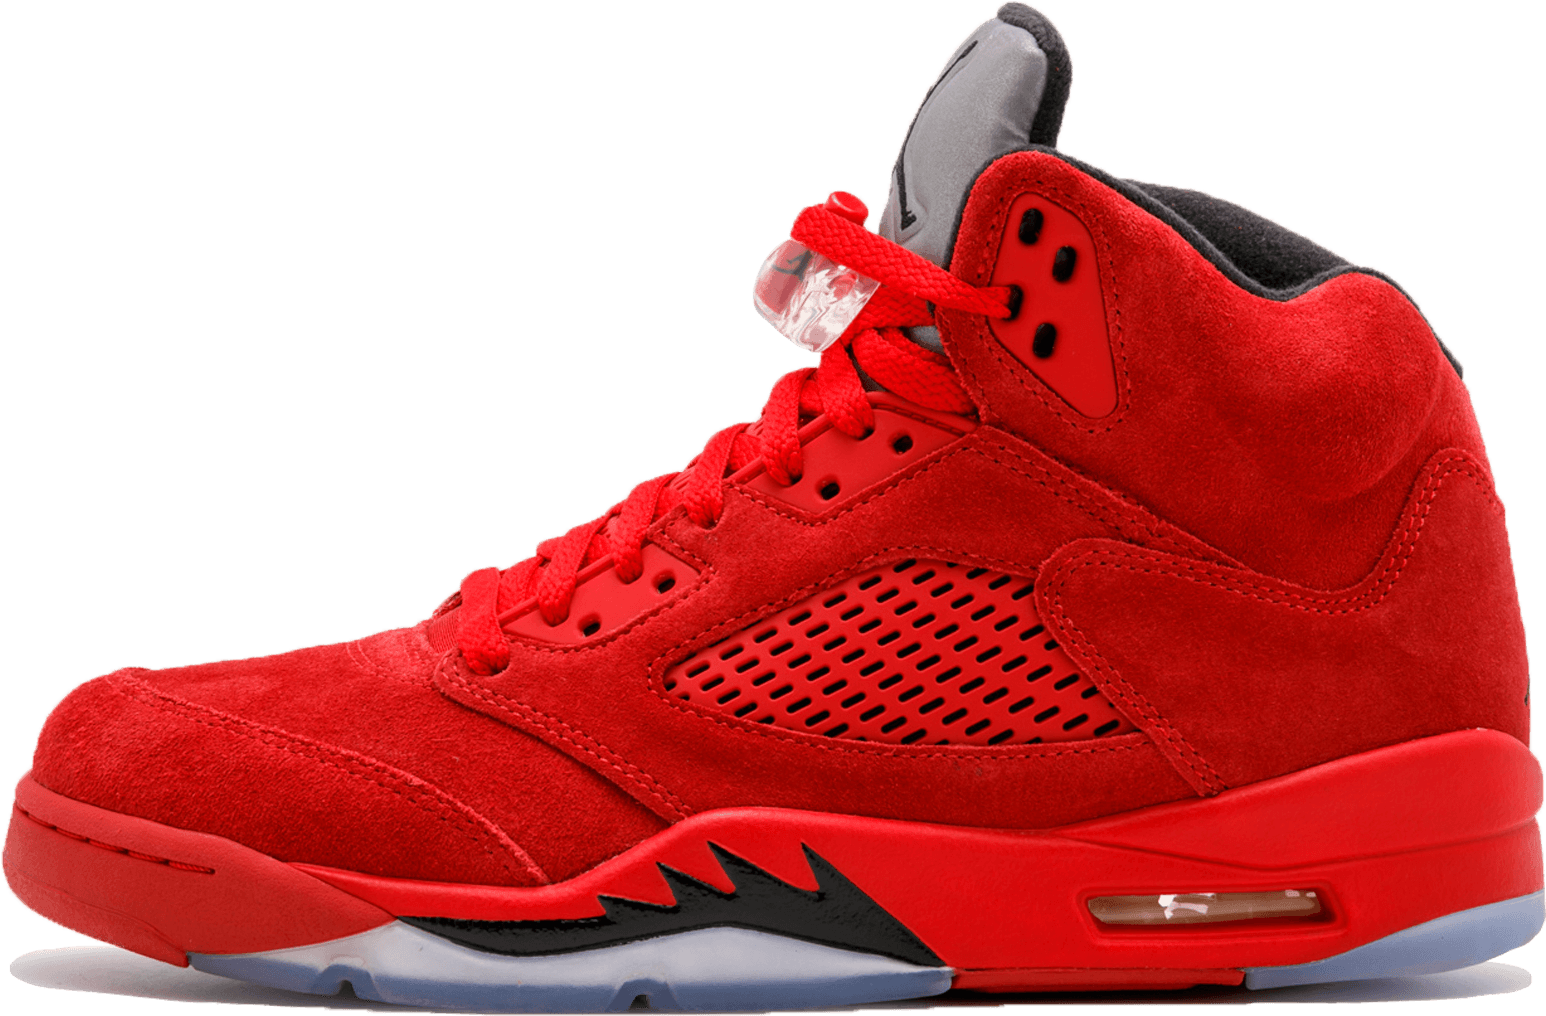 Air Jordan 2 Retro Melo Buy Jordans On Sale Legit - Air Jordan 5 Retro Red Suede (2000x1200), Png Download